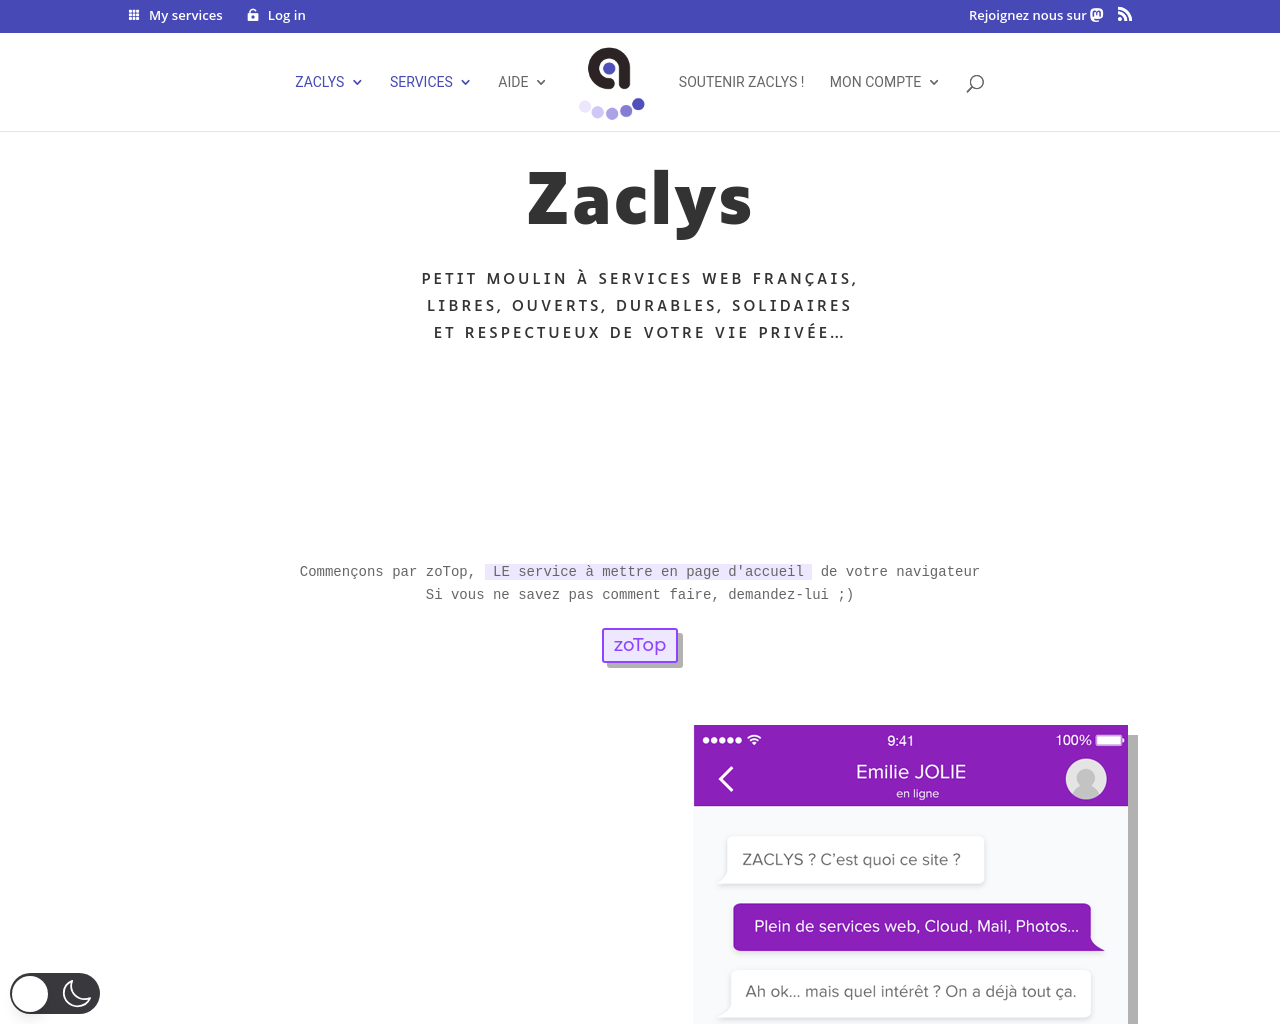 zaclys.com